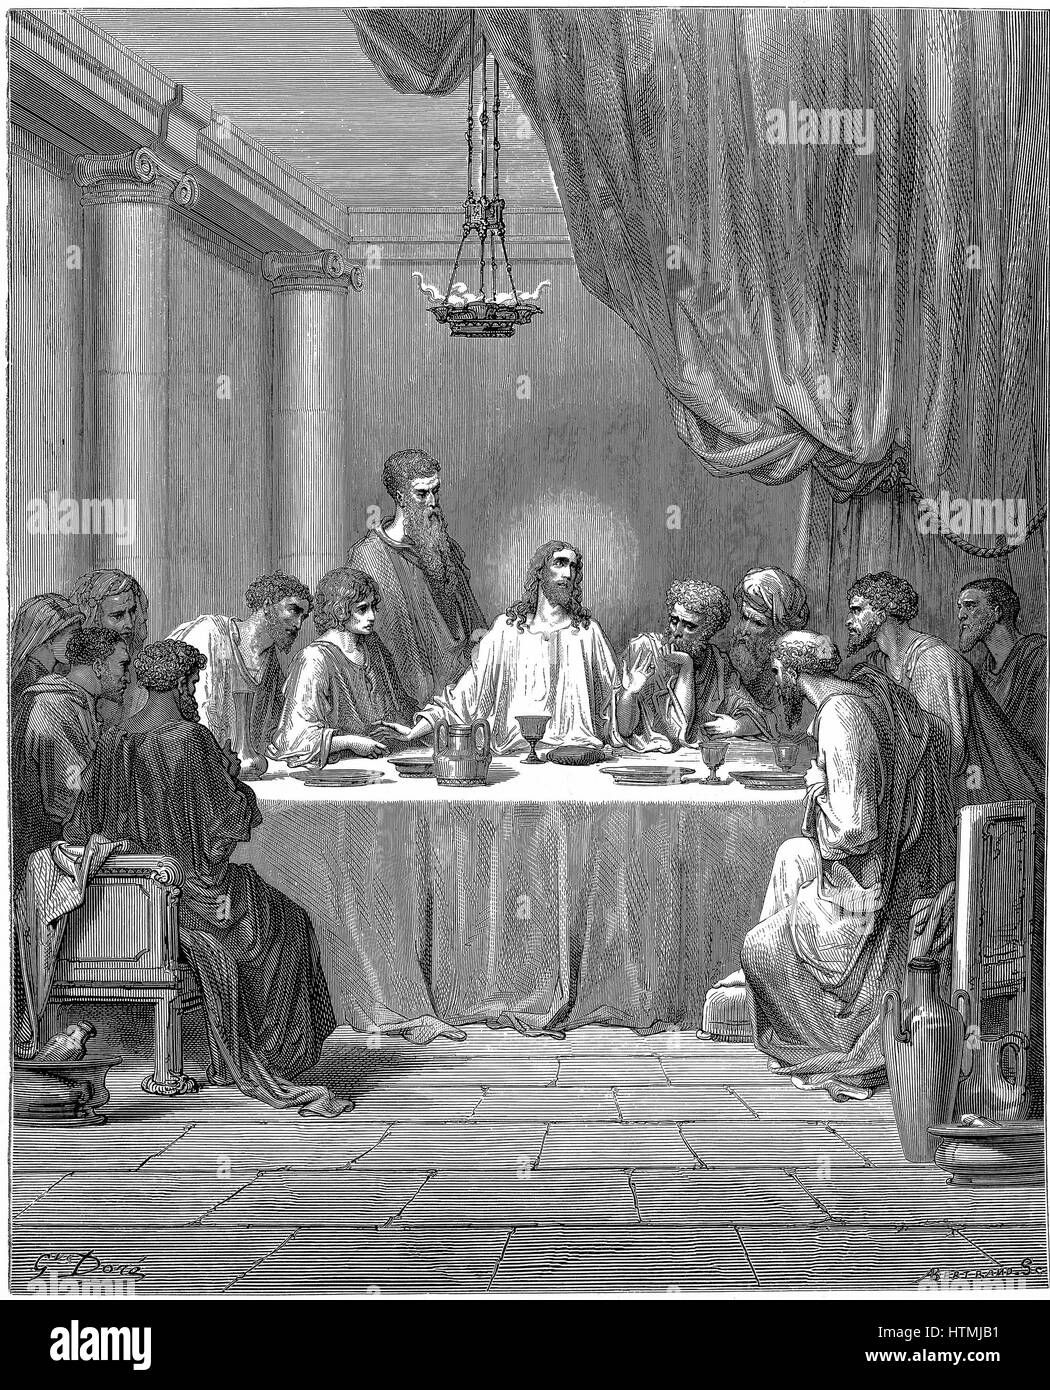 La ultima cena de jesus Imágenes de stock en blanco y negro - Alamy